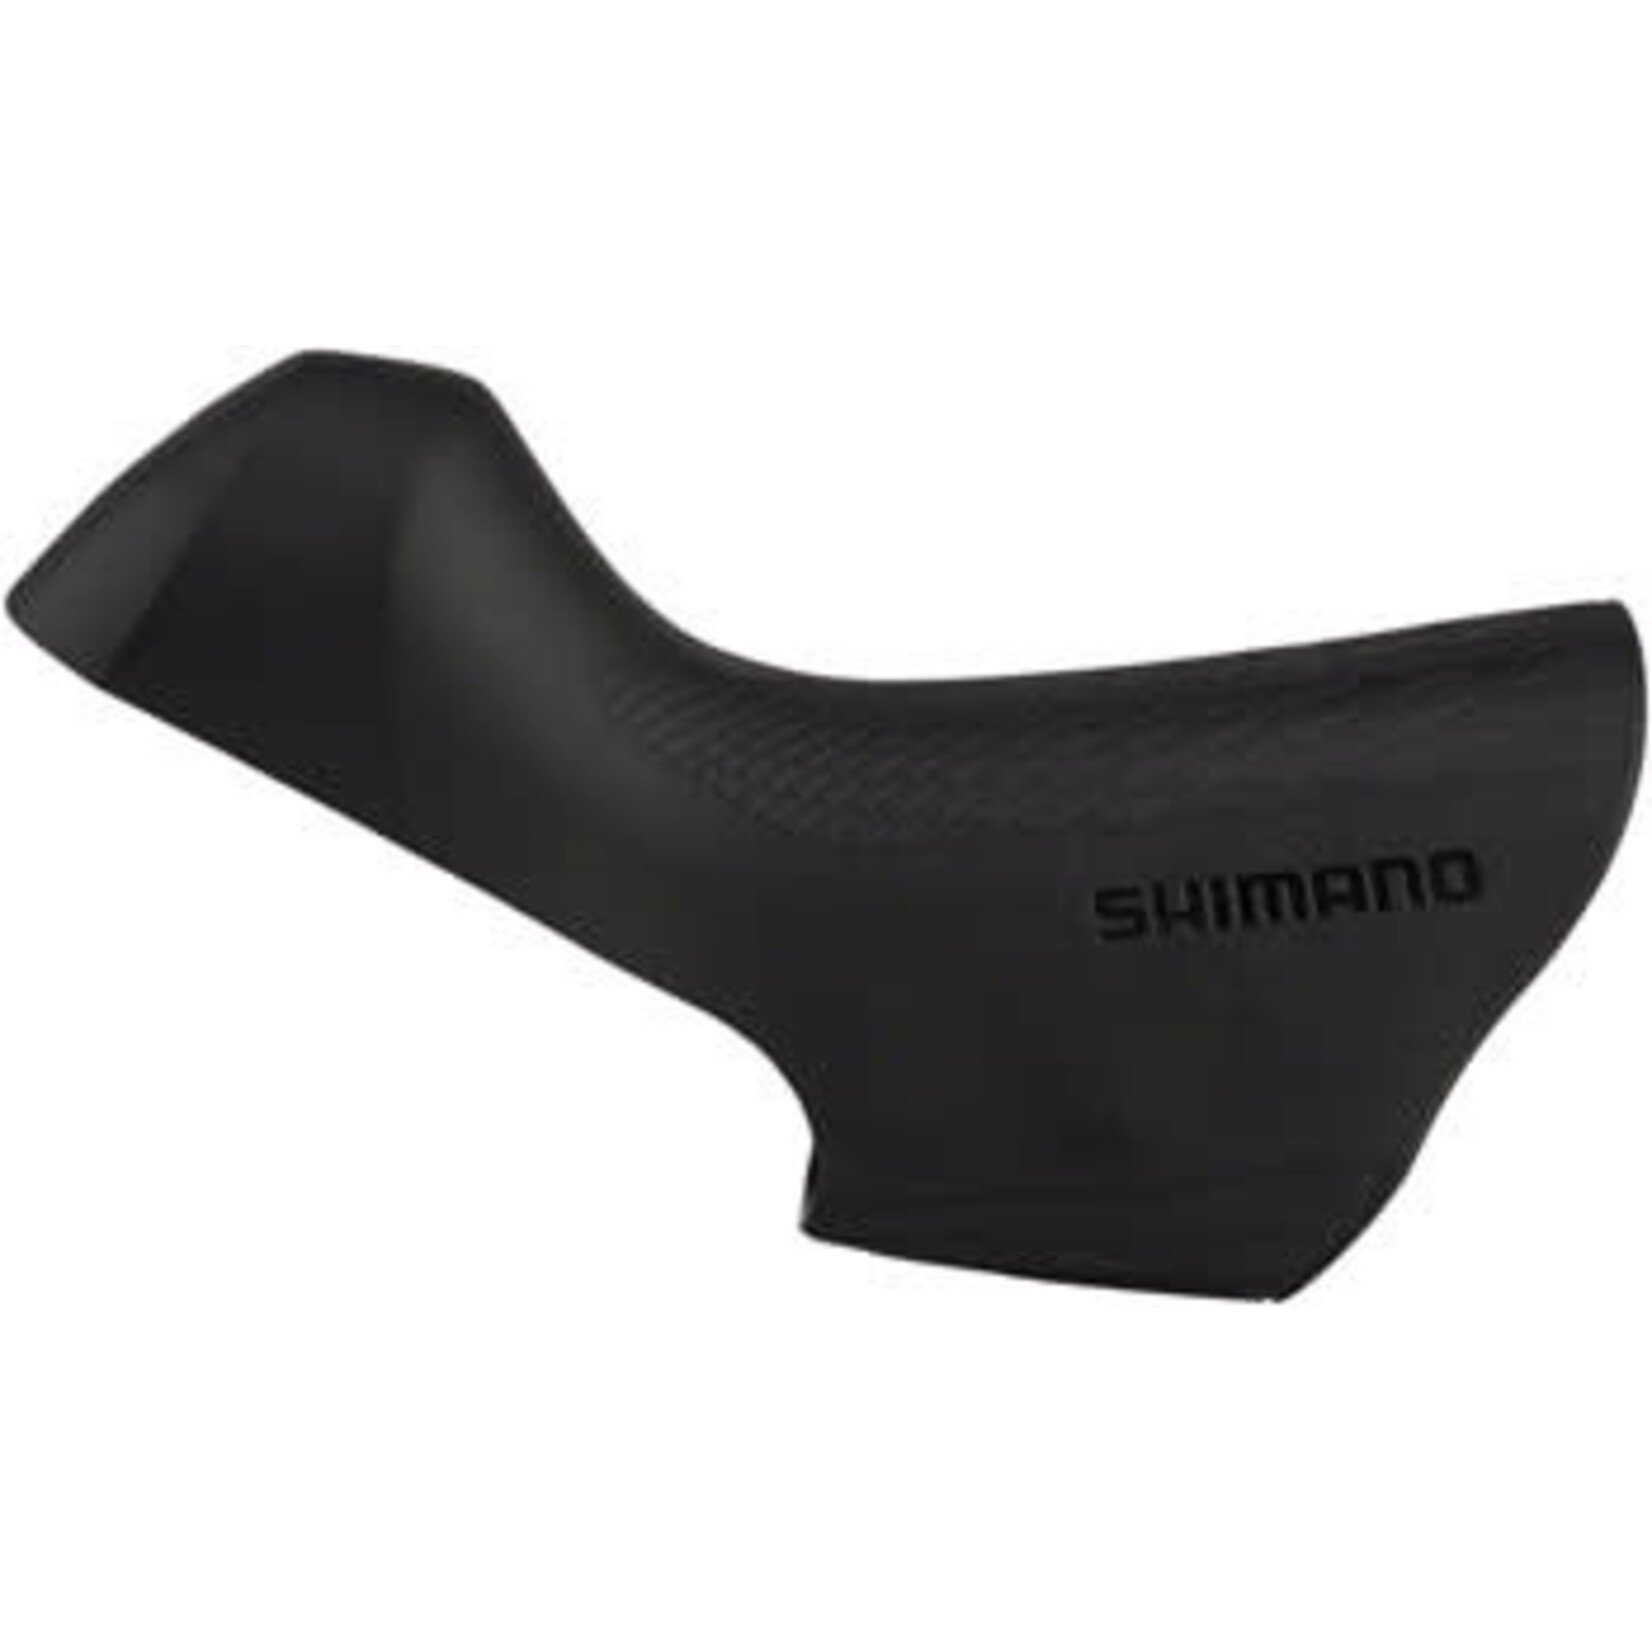 Shimano Ultegra ST-R8000 STI Lever Hoods